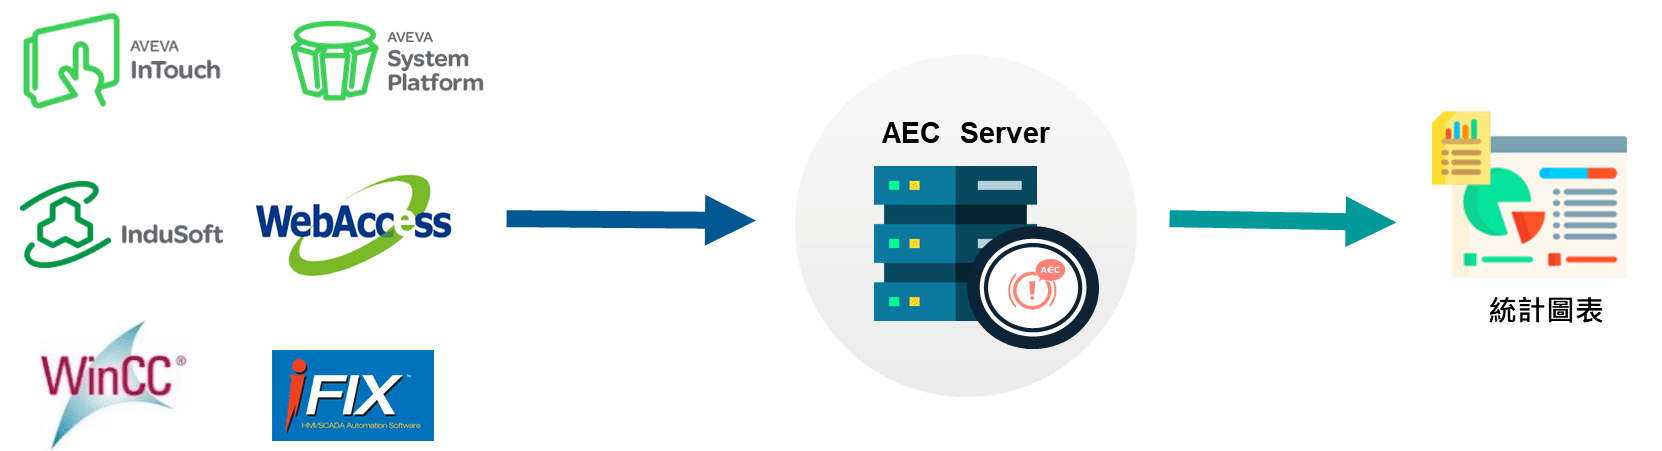 AEC 產品架構